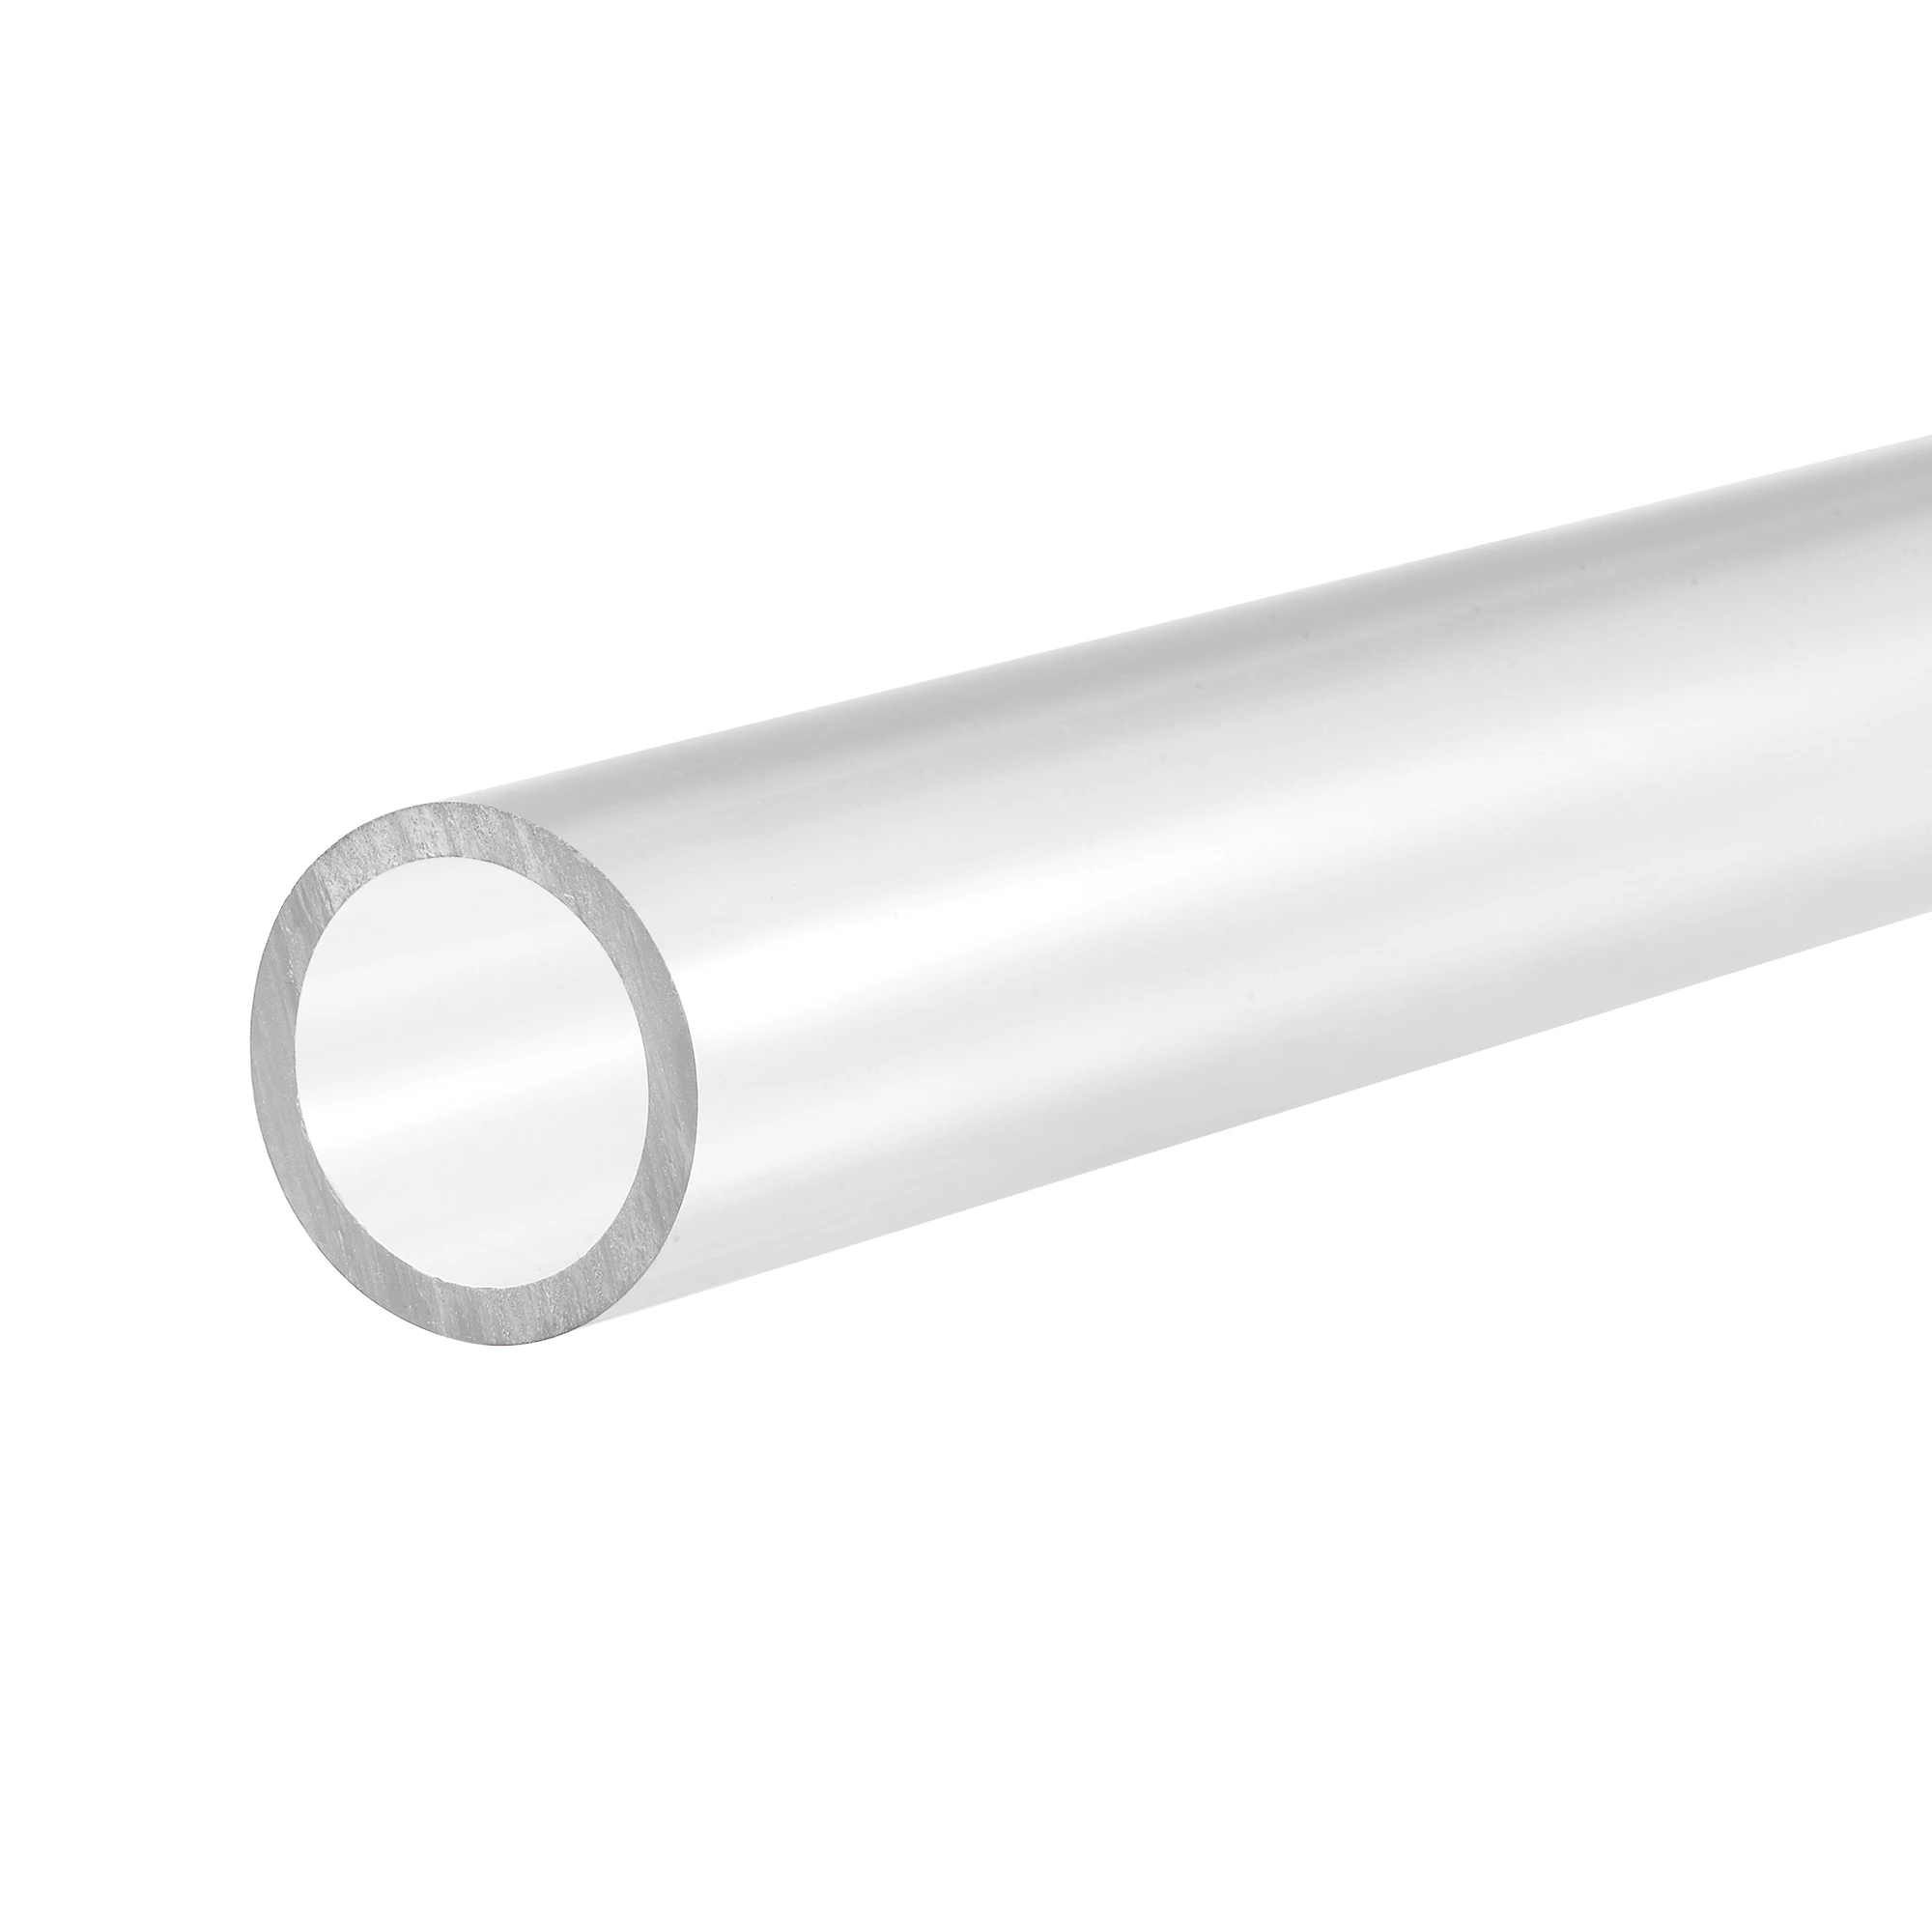 

Uxcell ПВХ жесткая круглая труба 20 мм внутренний диаметр 25 мм внешний диаметр 300 мм прозрачная высокая прозрачность для водопроводной трубы, ре...